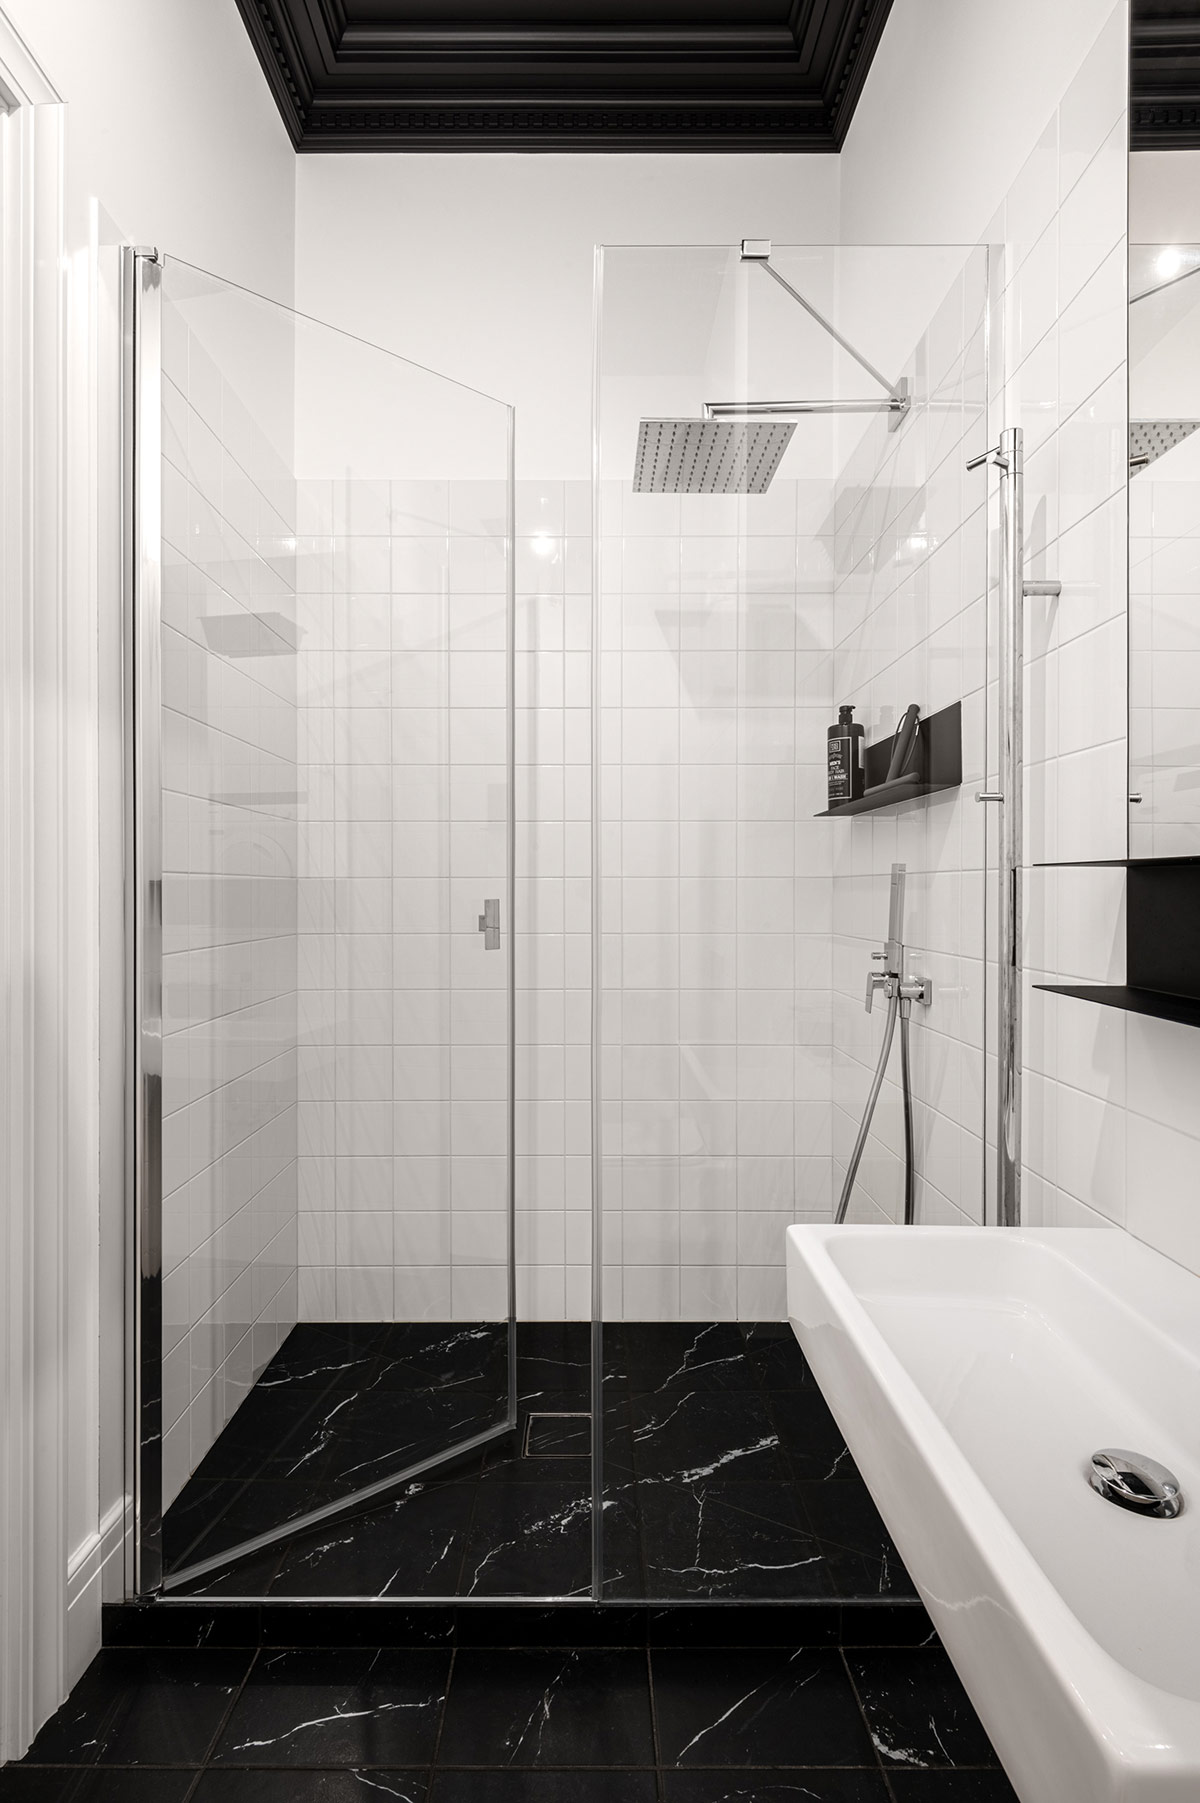 Toilet và bồn rửa tay đều được thiết kế gắn tường để giúp phòng tắm rộng rãi và dễ dàng vệ sinh sàn nhà. Buồng tắm được phân tách với phòng vệ sinh bằng cửa kính trong suốt, chiếc kệ tối giản màu đen chỉ đặt vật dụng thật cần thiết cho khu vực này thông thoáng hơn.